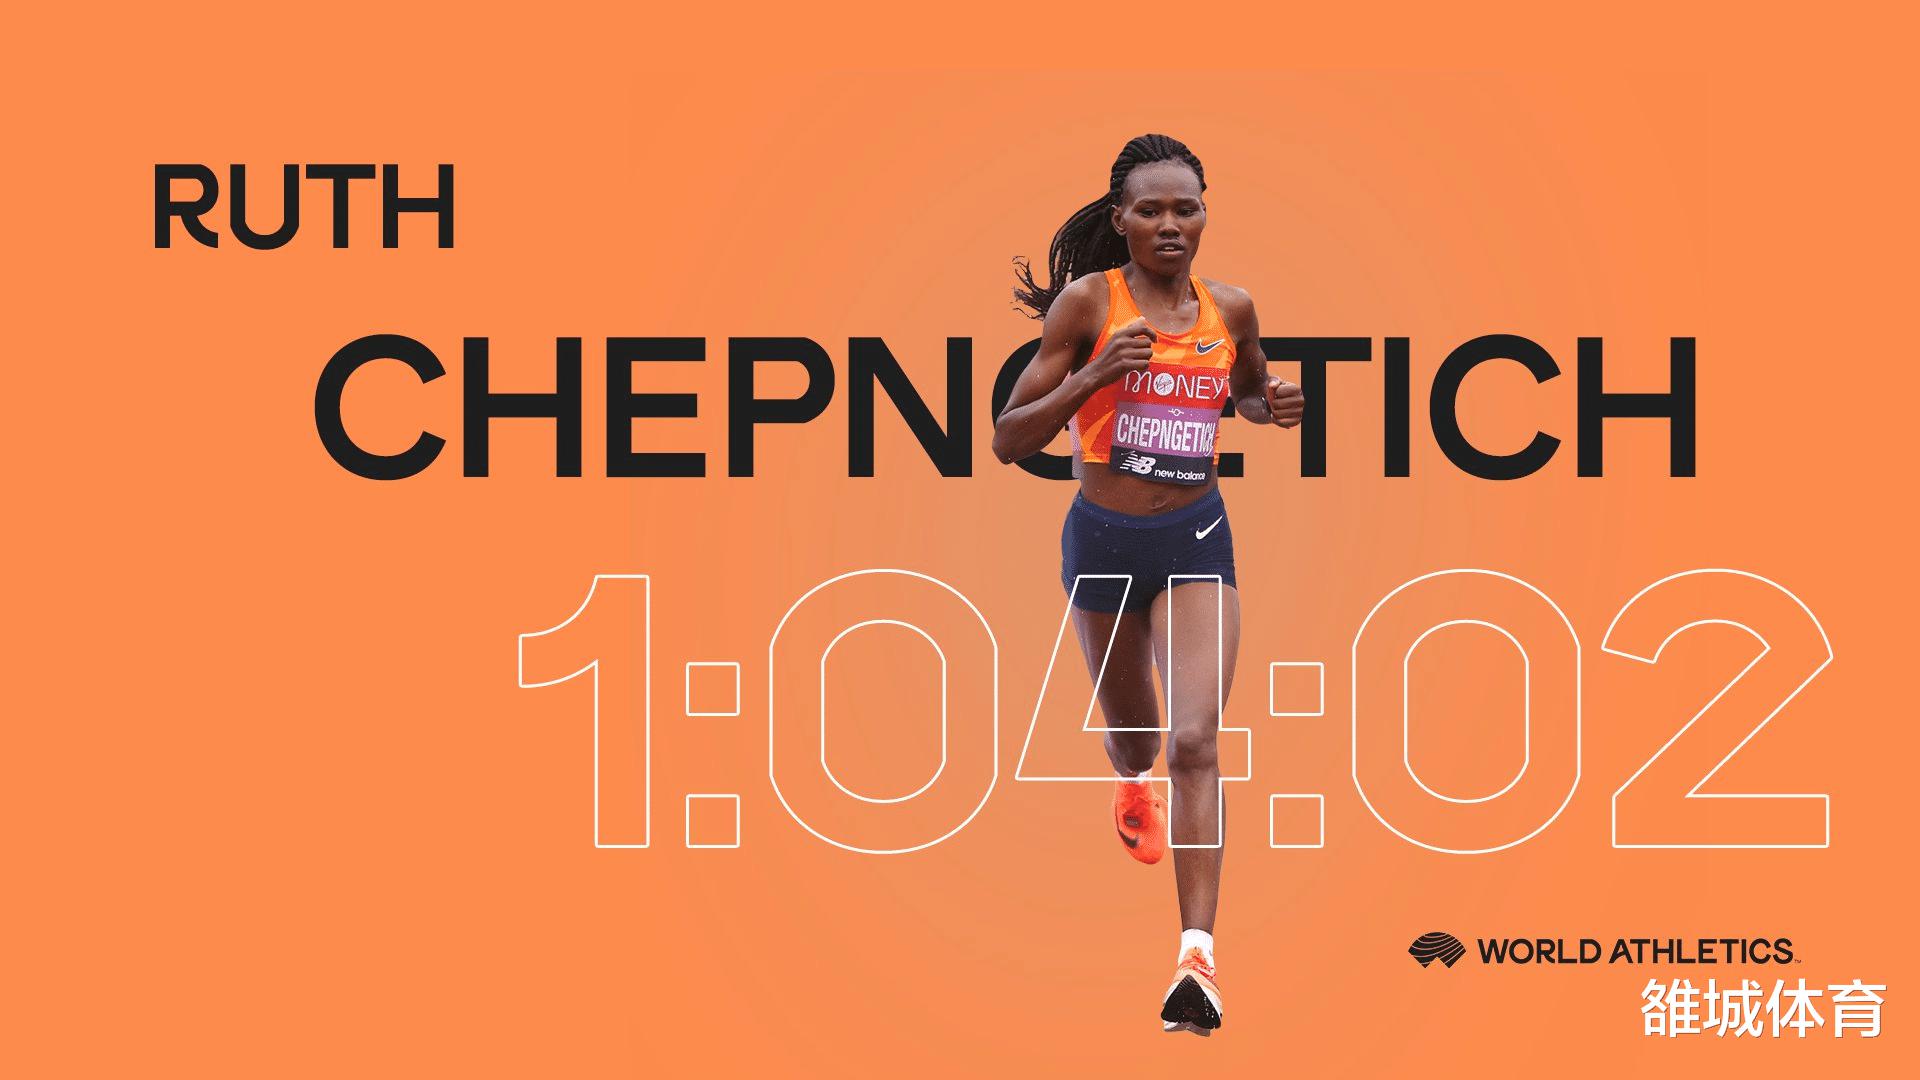 女子半马世界纪录1年提速29秒 肯尼亚埃塞俄比亚女将你追我赶